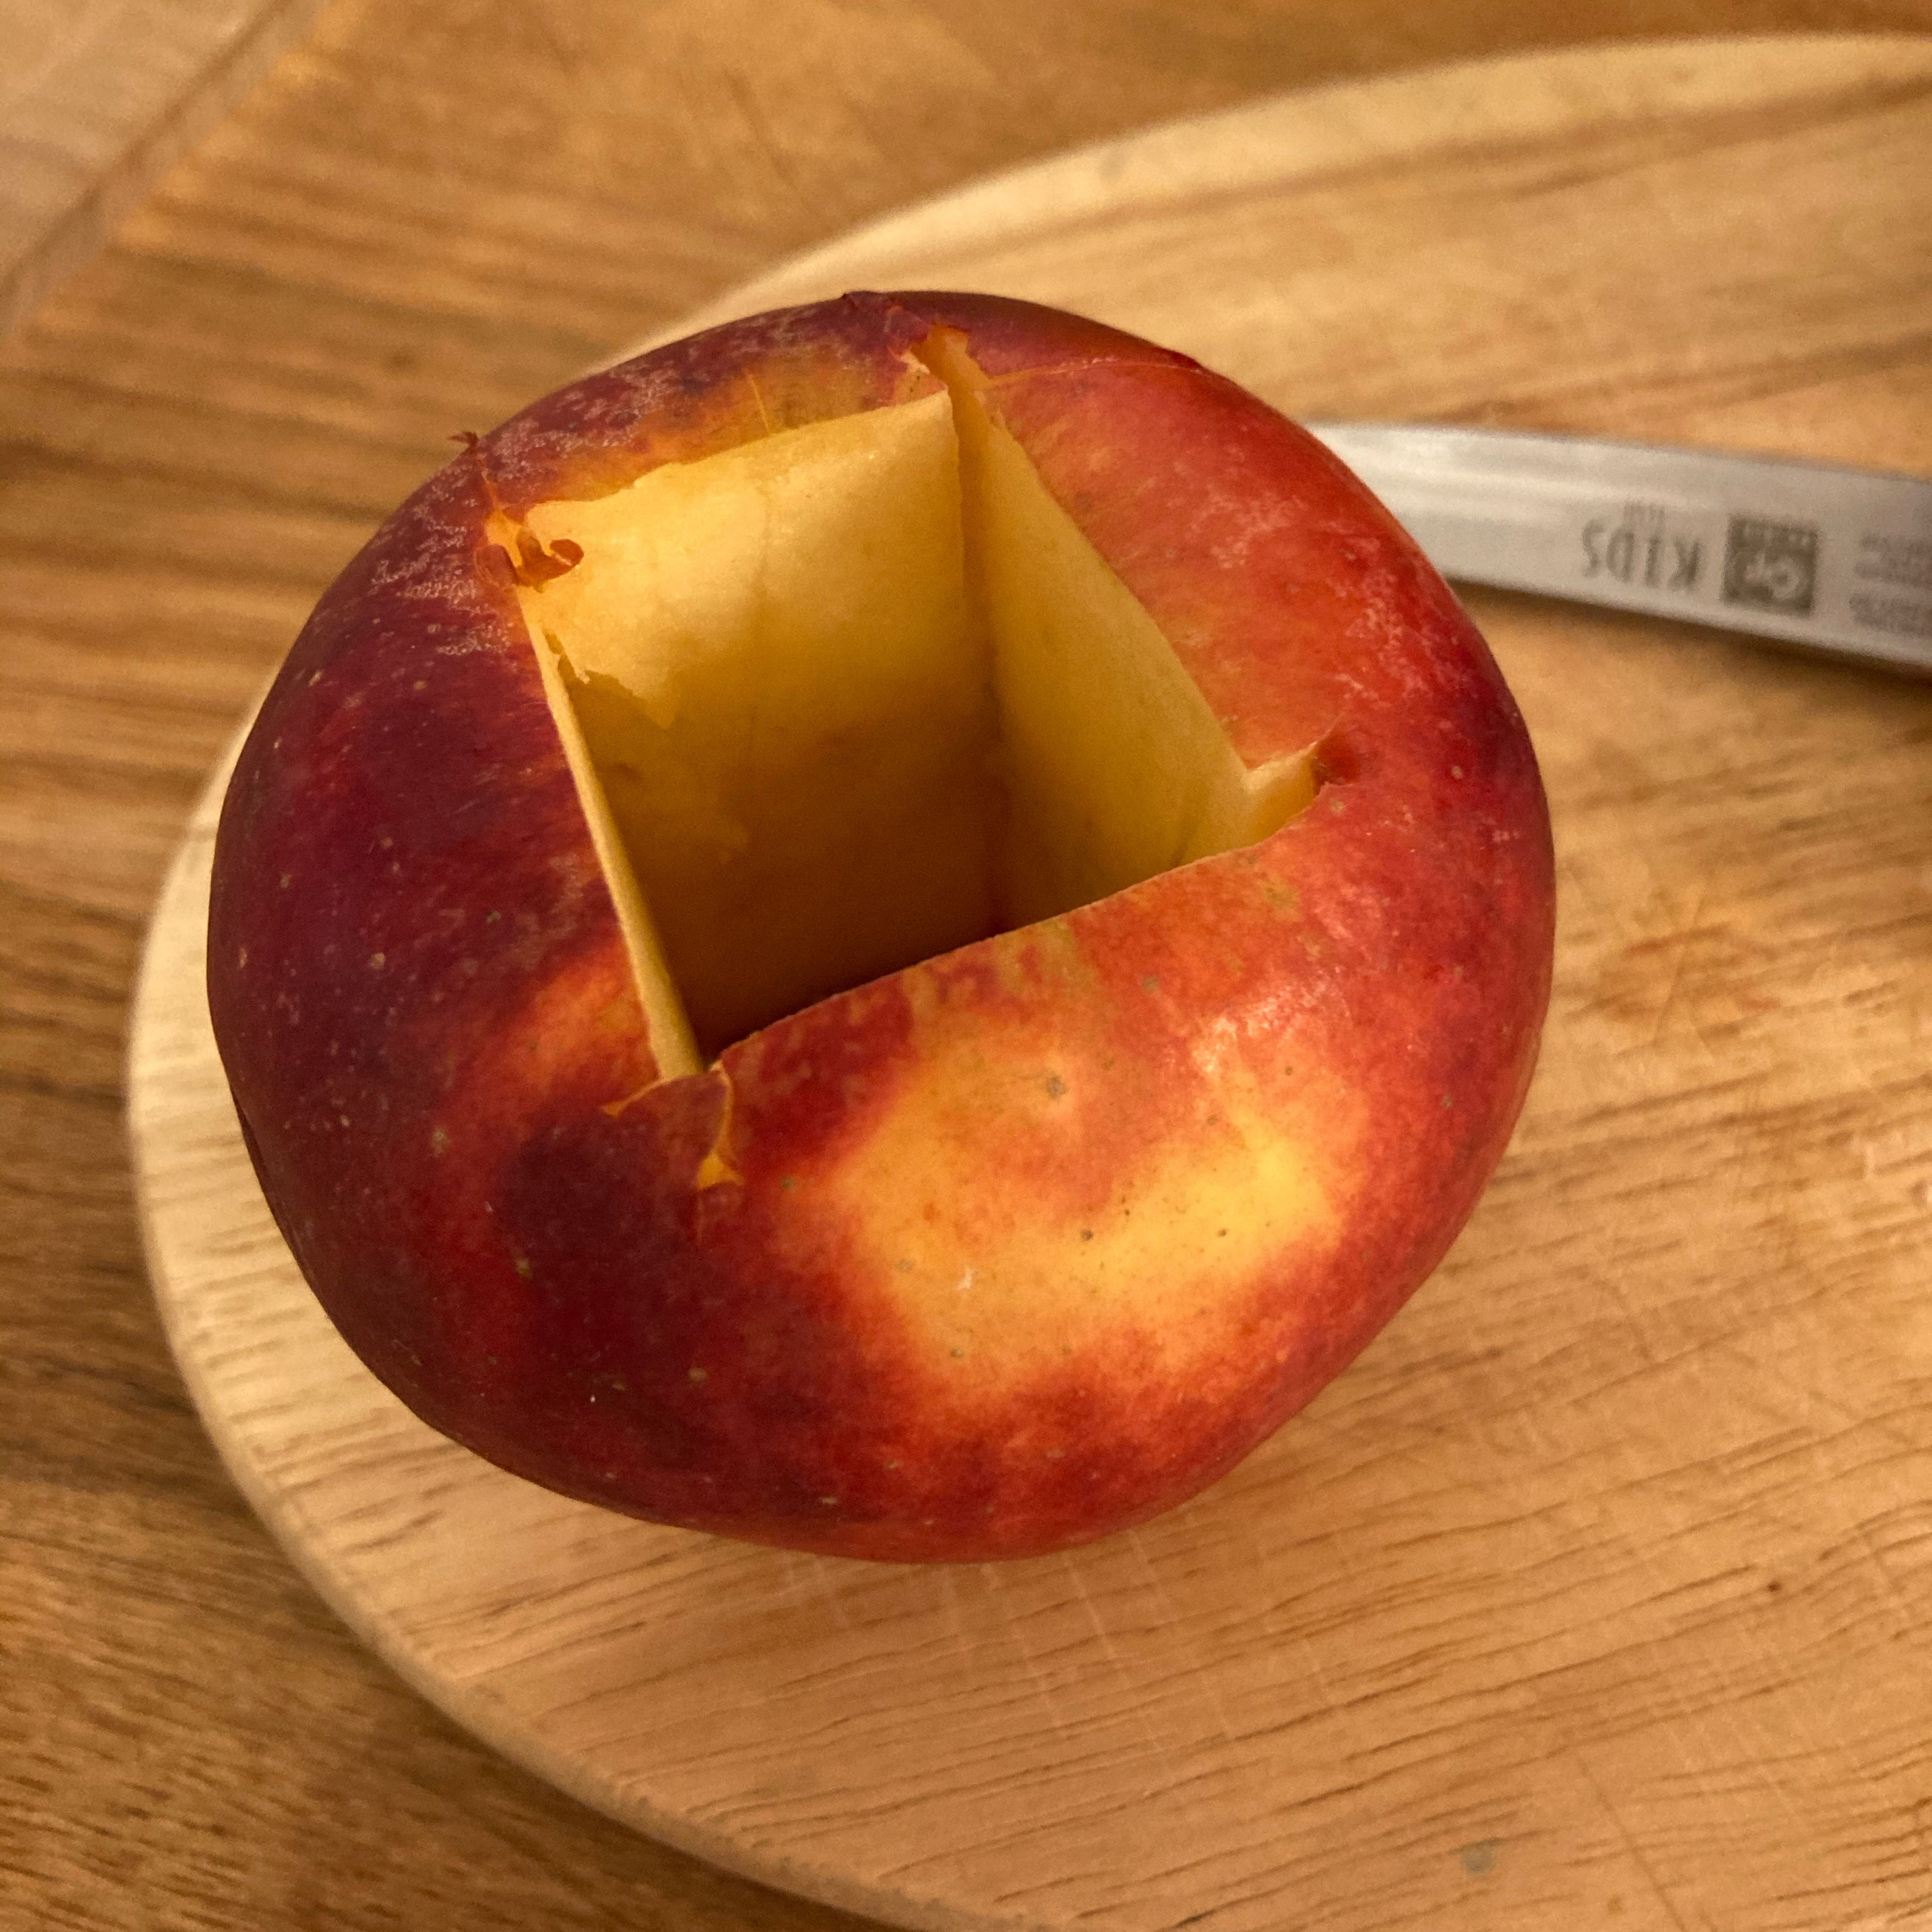 Gehäuse aus dem Apfel entfernen